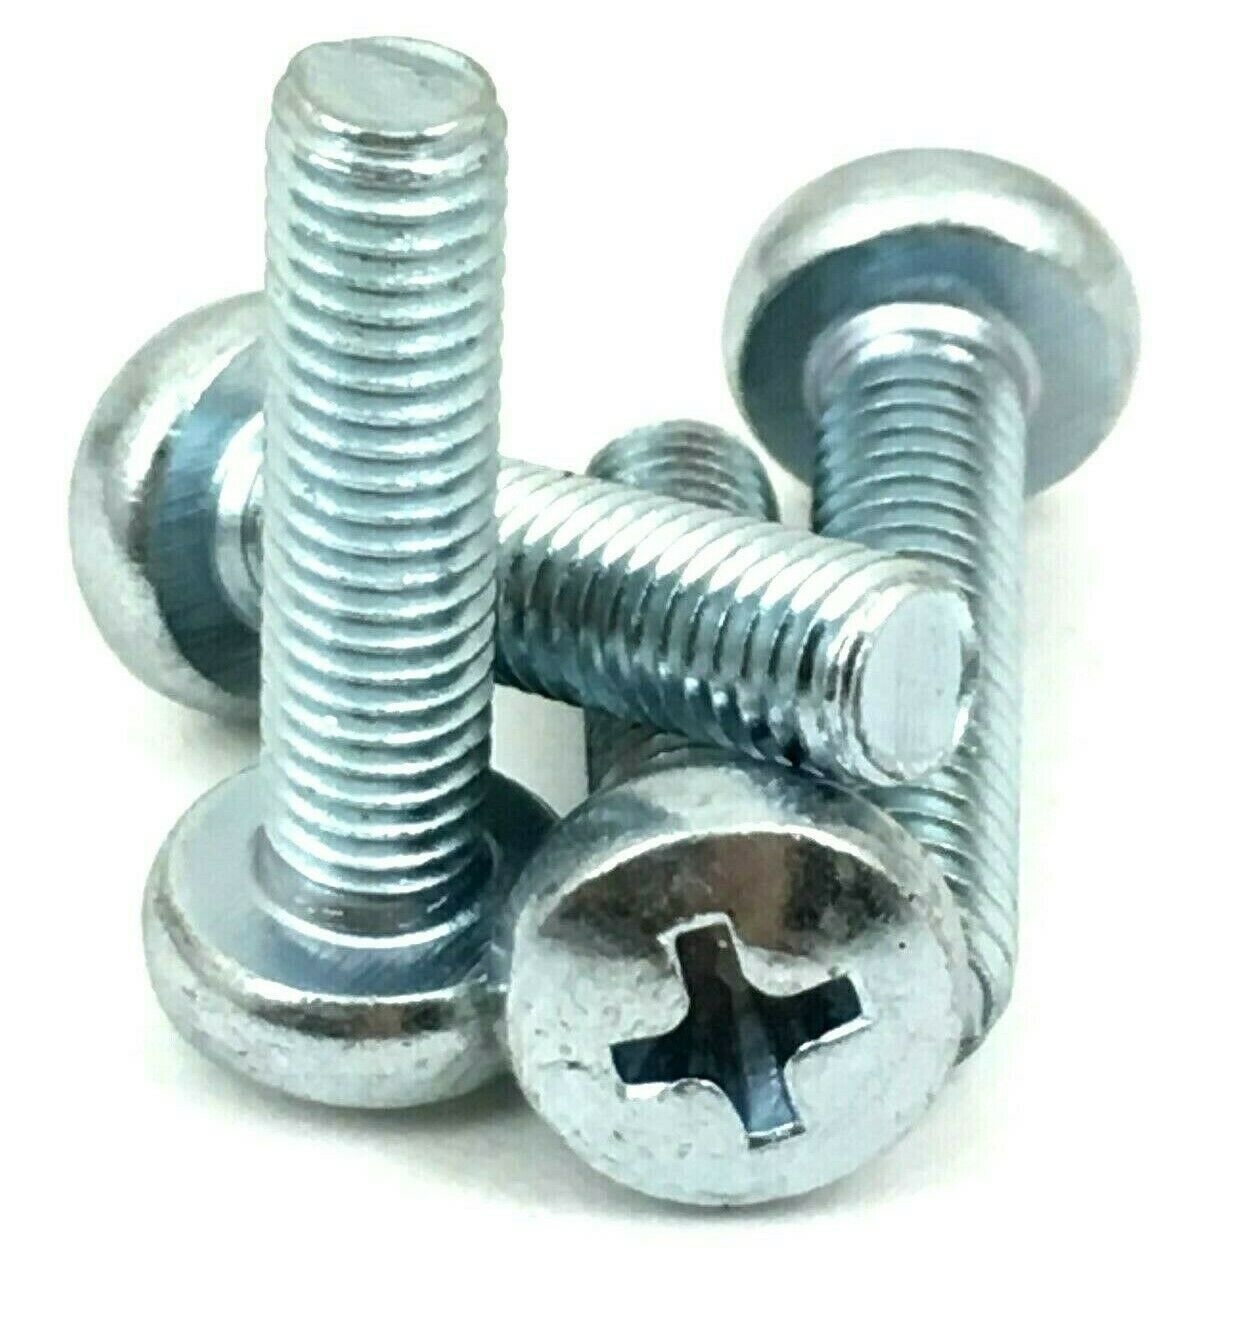 ReplacementScrews Stand Screws for Vizio M80-C3 